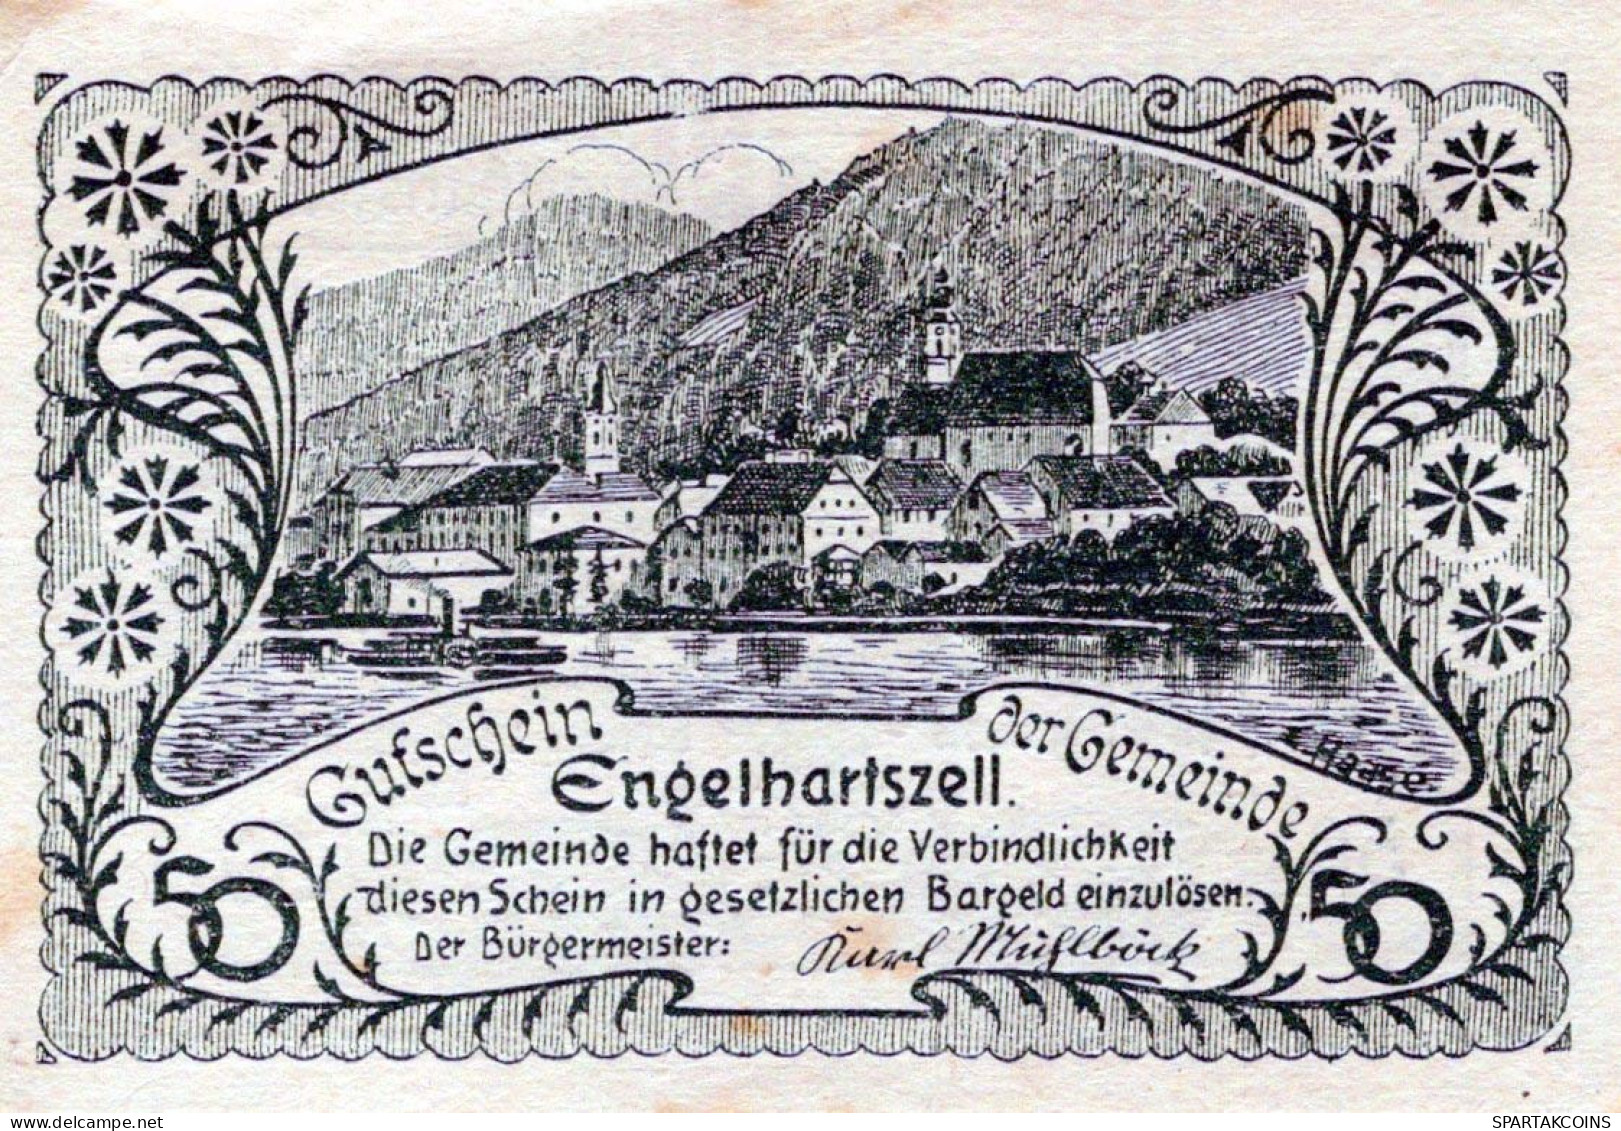 50 HELLER 1920 Stadt ENGELHARTSZELL Oberösterreich Österreich Notgeld Papiergeld Banknote #PG550 - [11] Local Banknote Issues